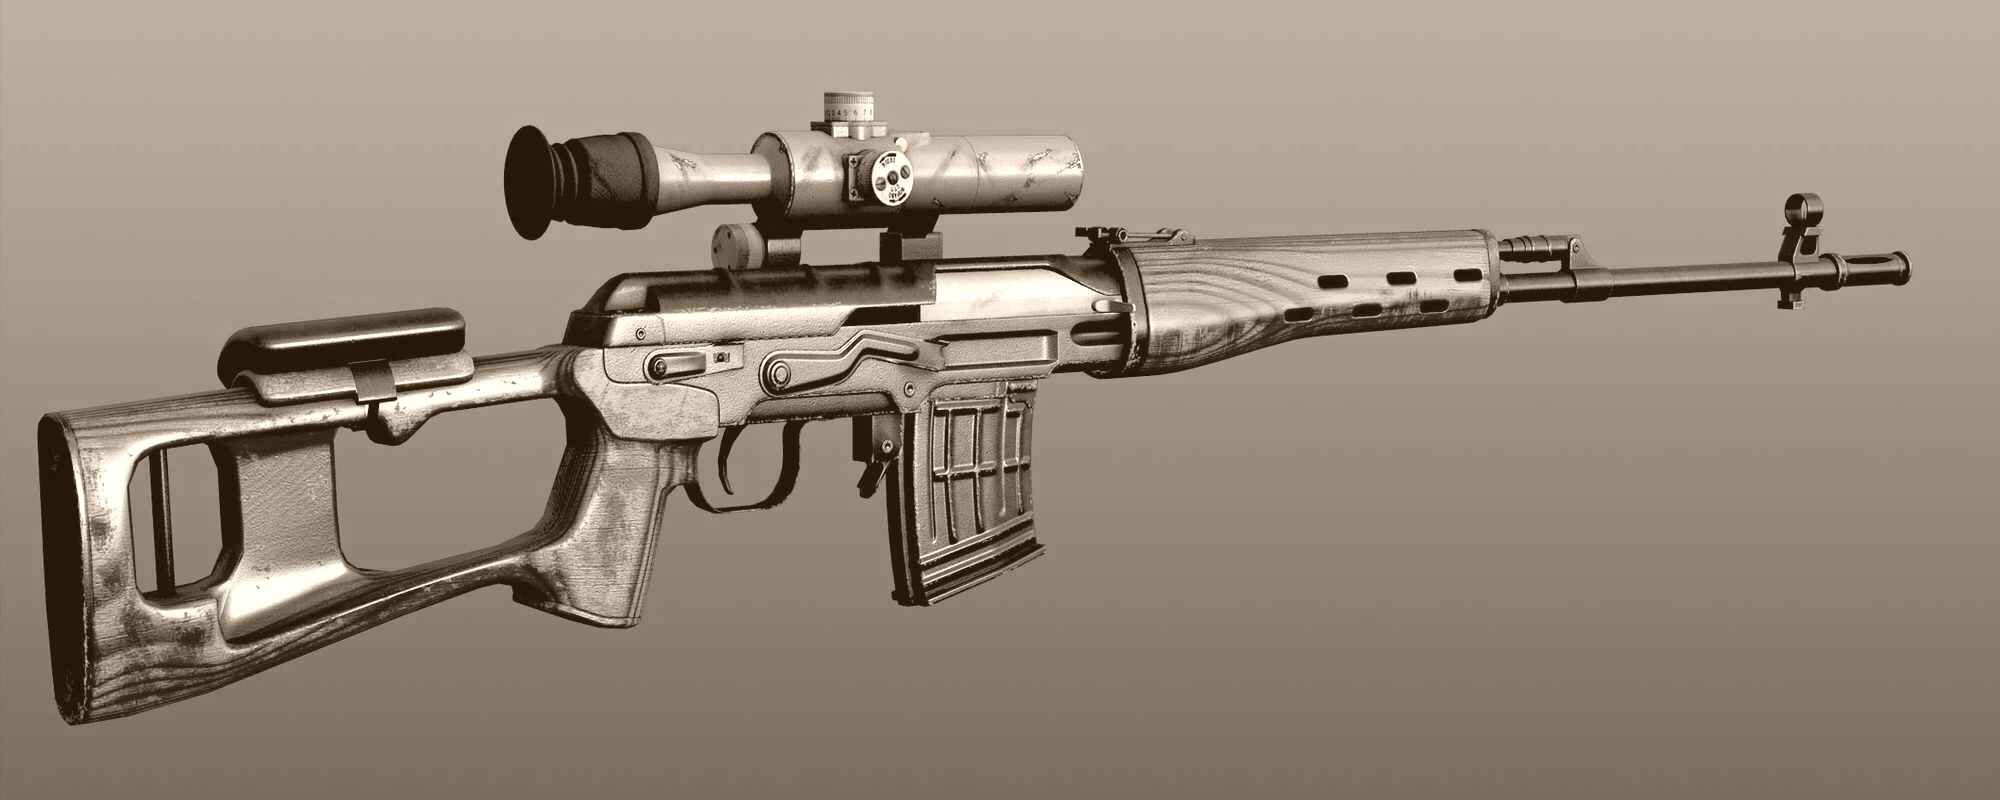 Снайперская винтовка Драгунова - один из лучших образцов ижевского оружия